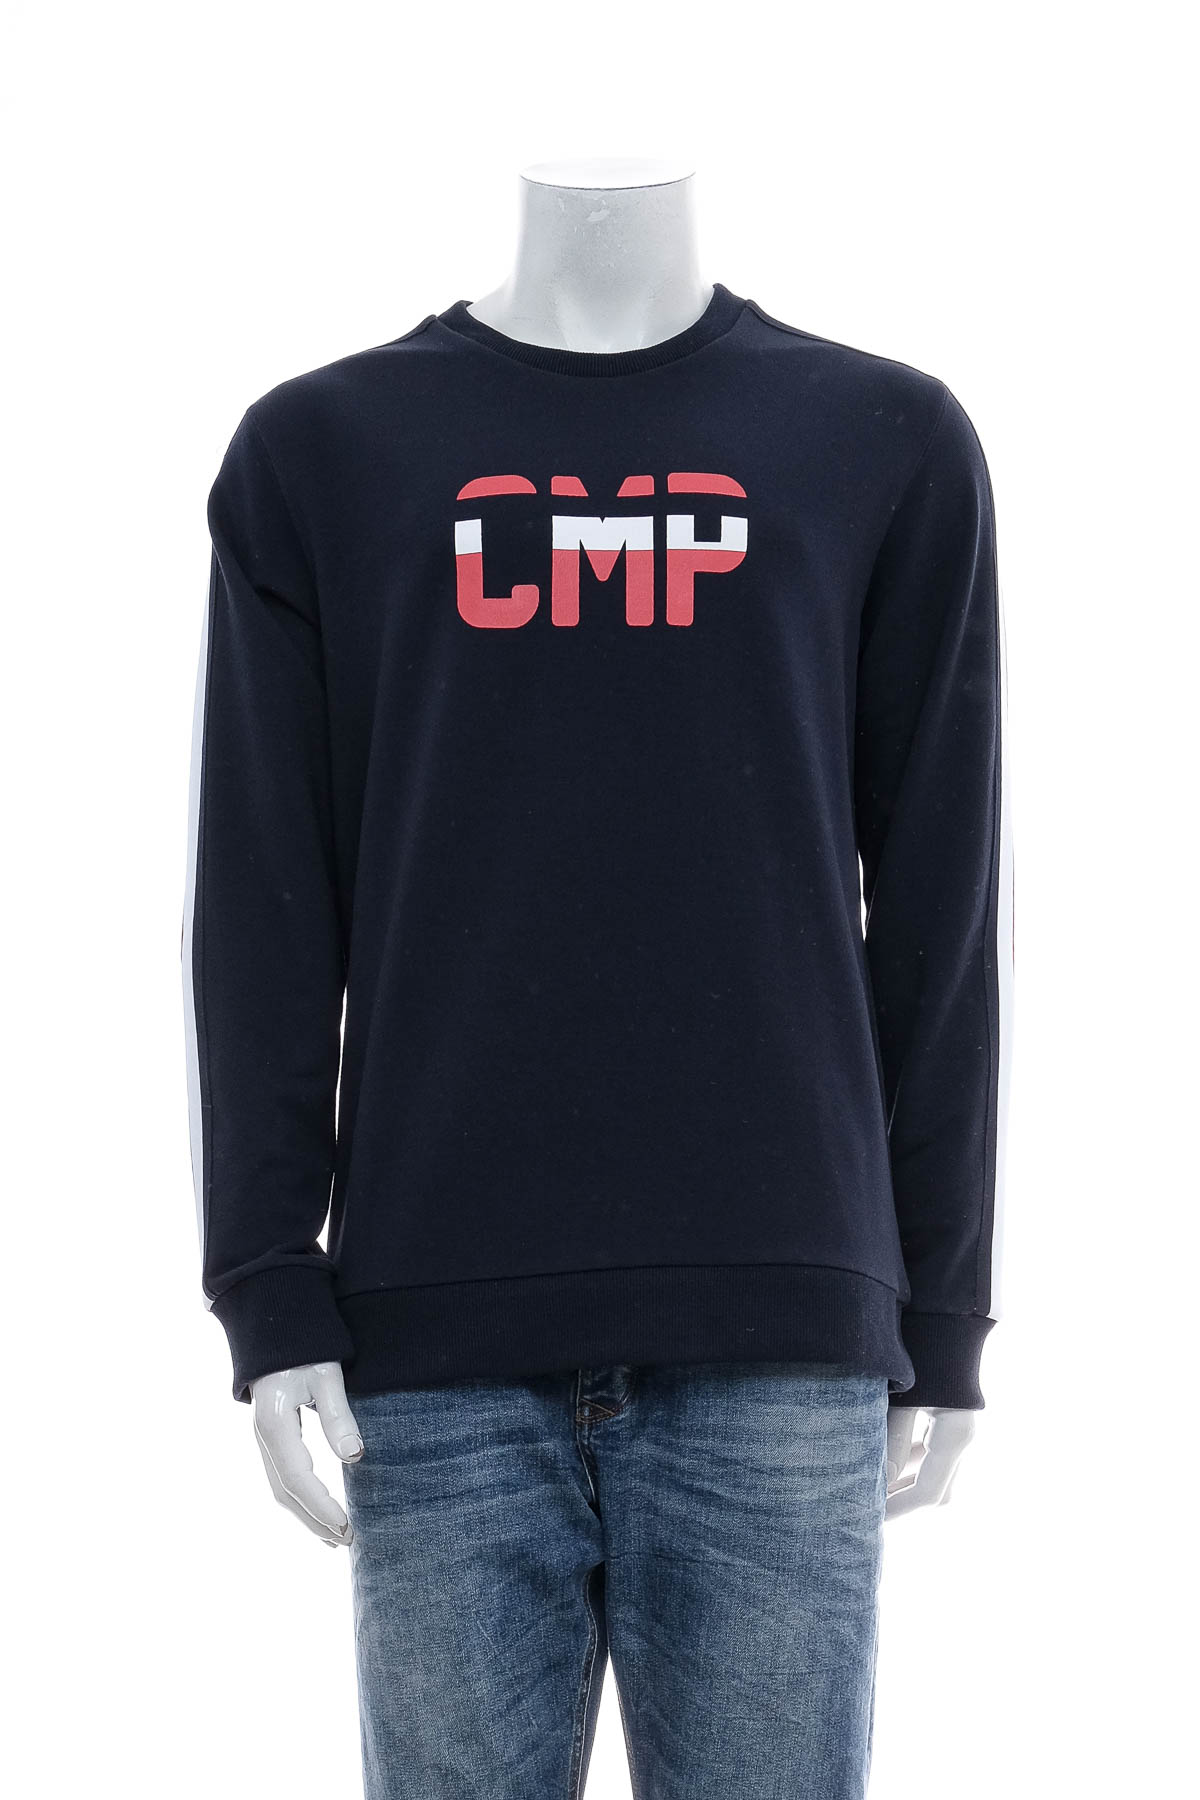 Ανδρική μπλούζα - CMP - 0